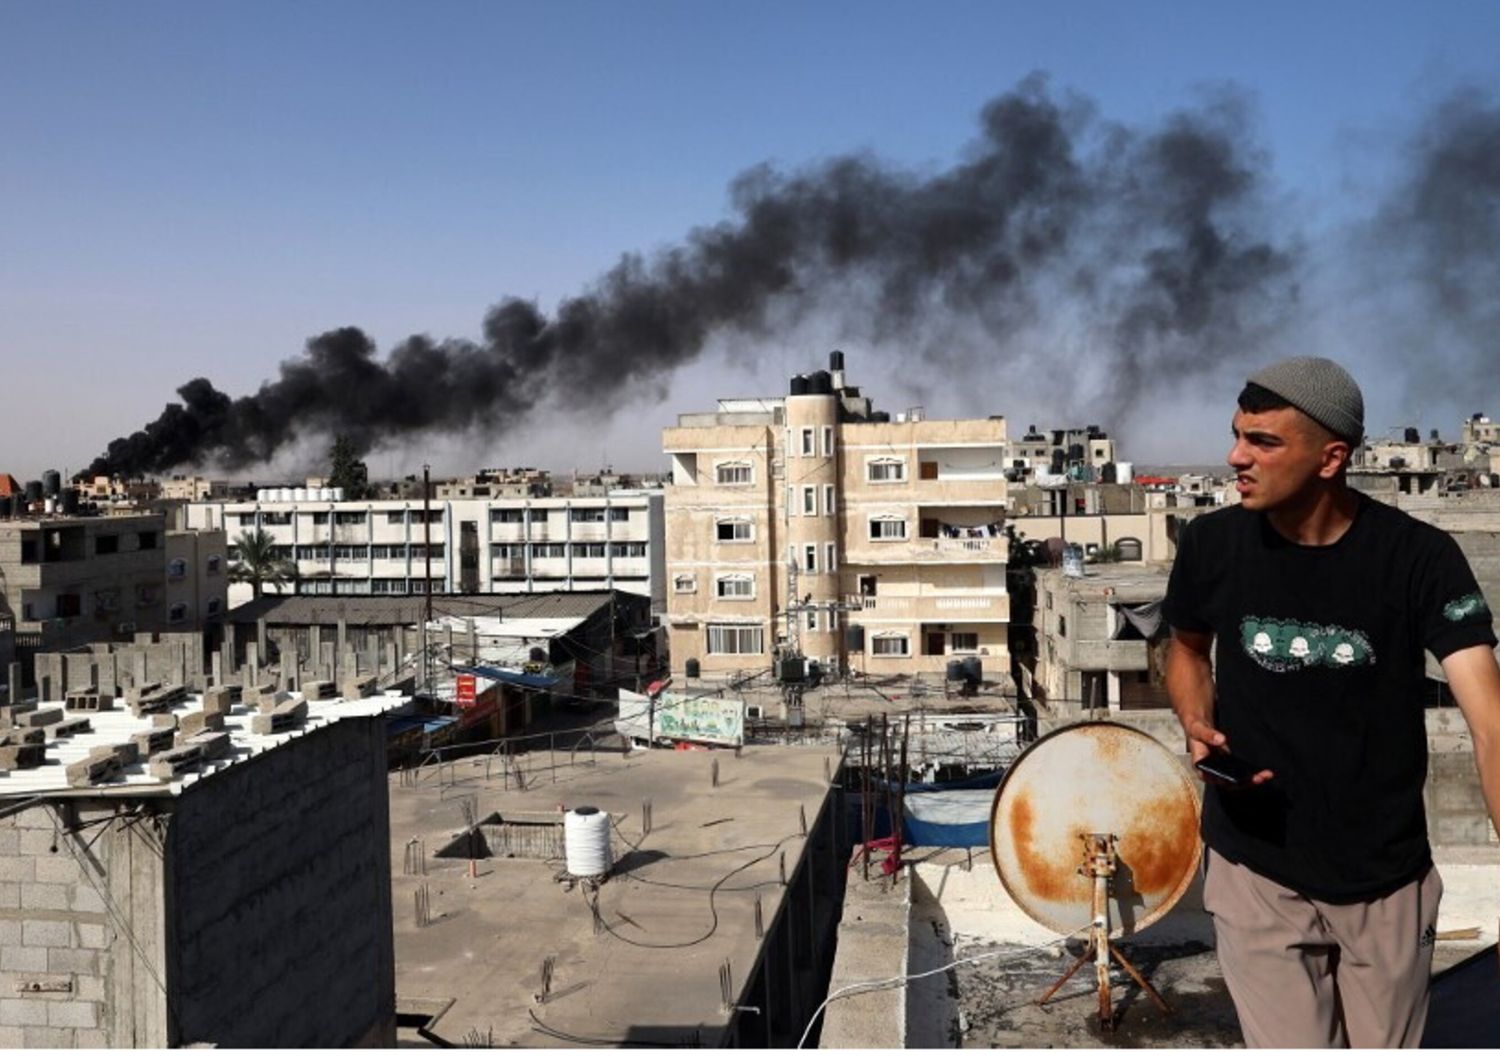 Un uomo osserva il fumo nero e denso che si leva dall'incendio di un edificio causato dai bombardamenti israeliani a Rafah, nel sud della Striscia di Gaza